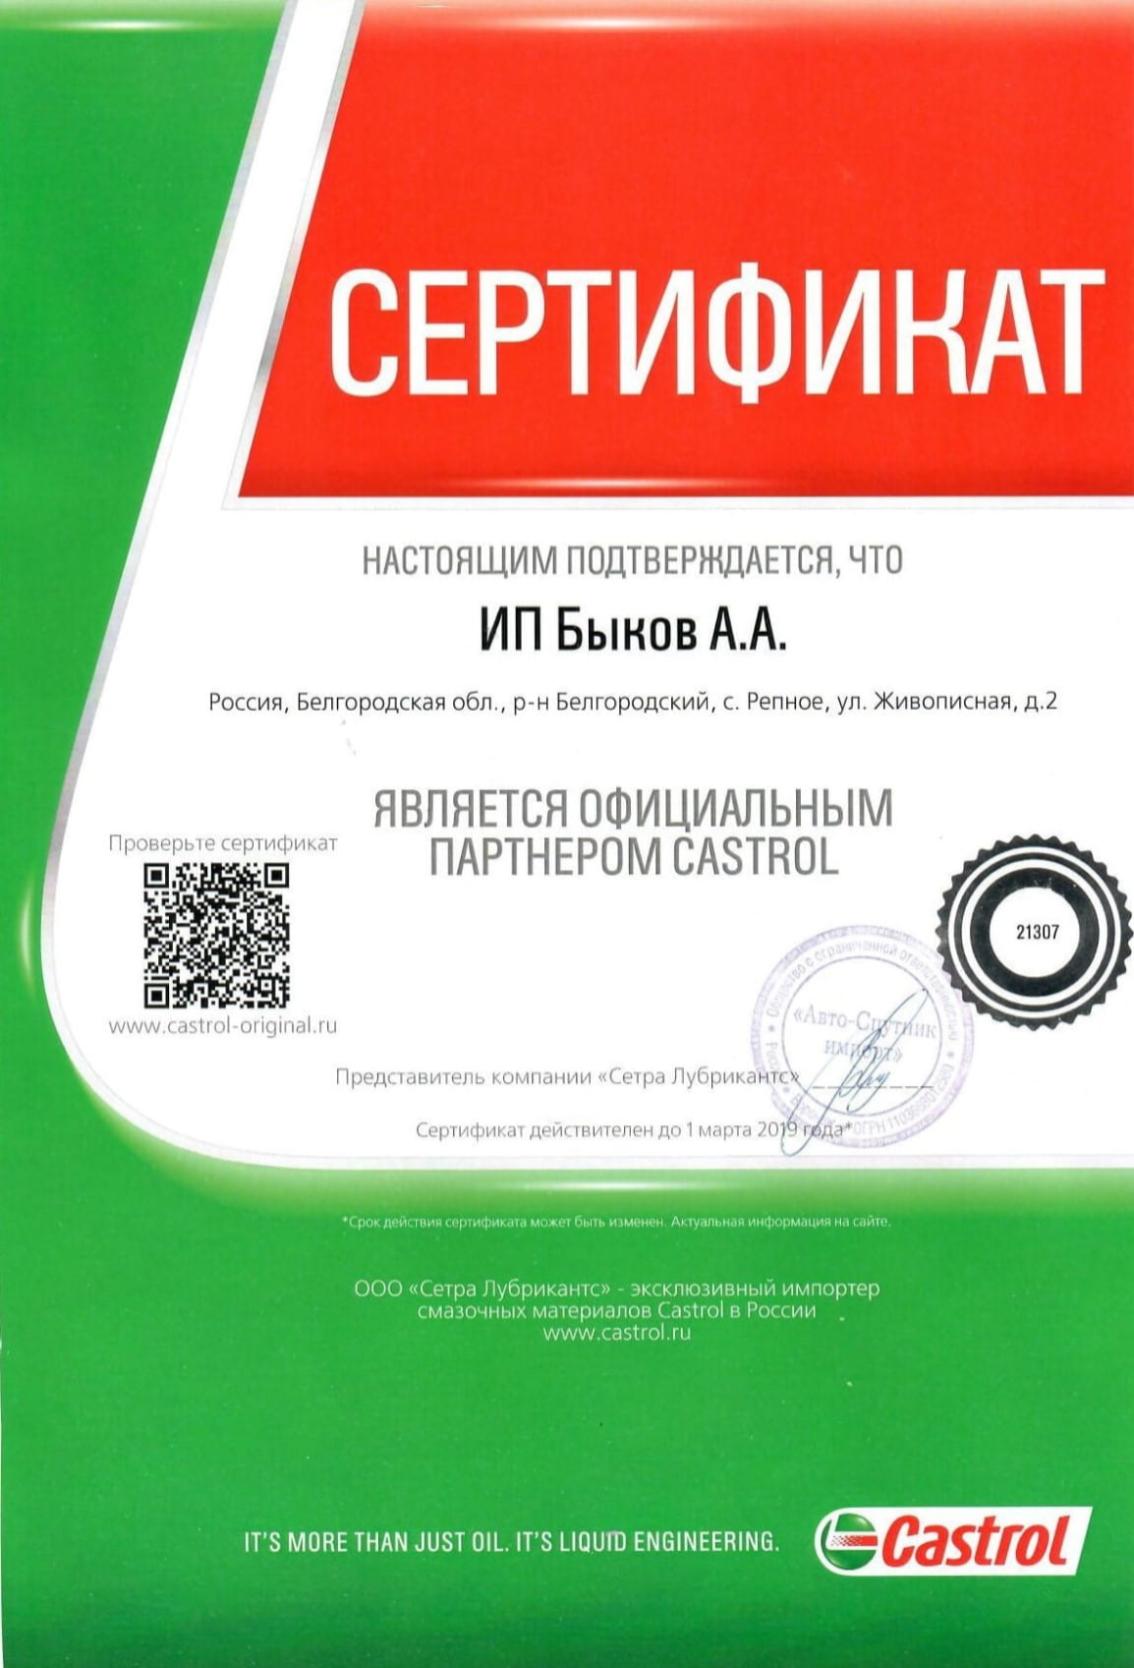 Сертификат о подтверждении партнерства «АТЦ АВТОМАТ» и «CASTROL» 